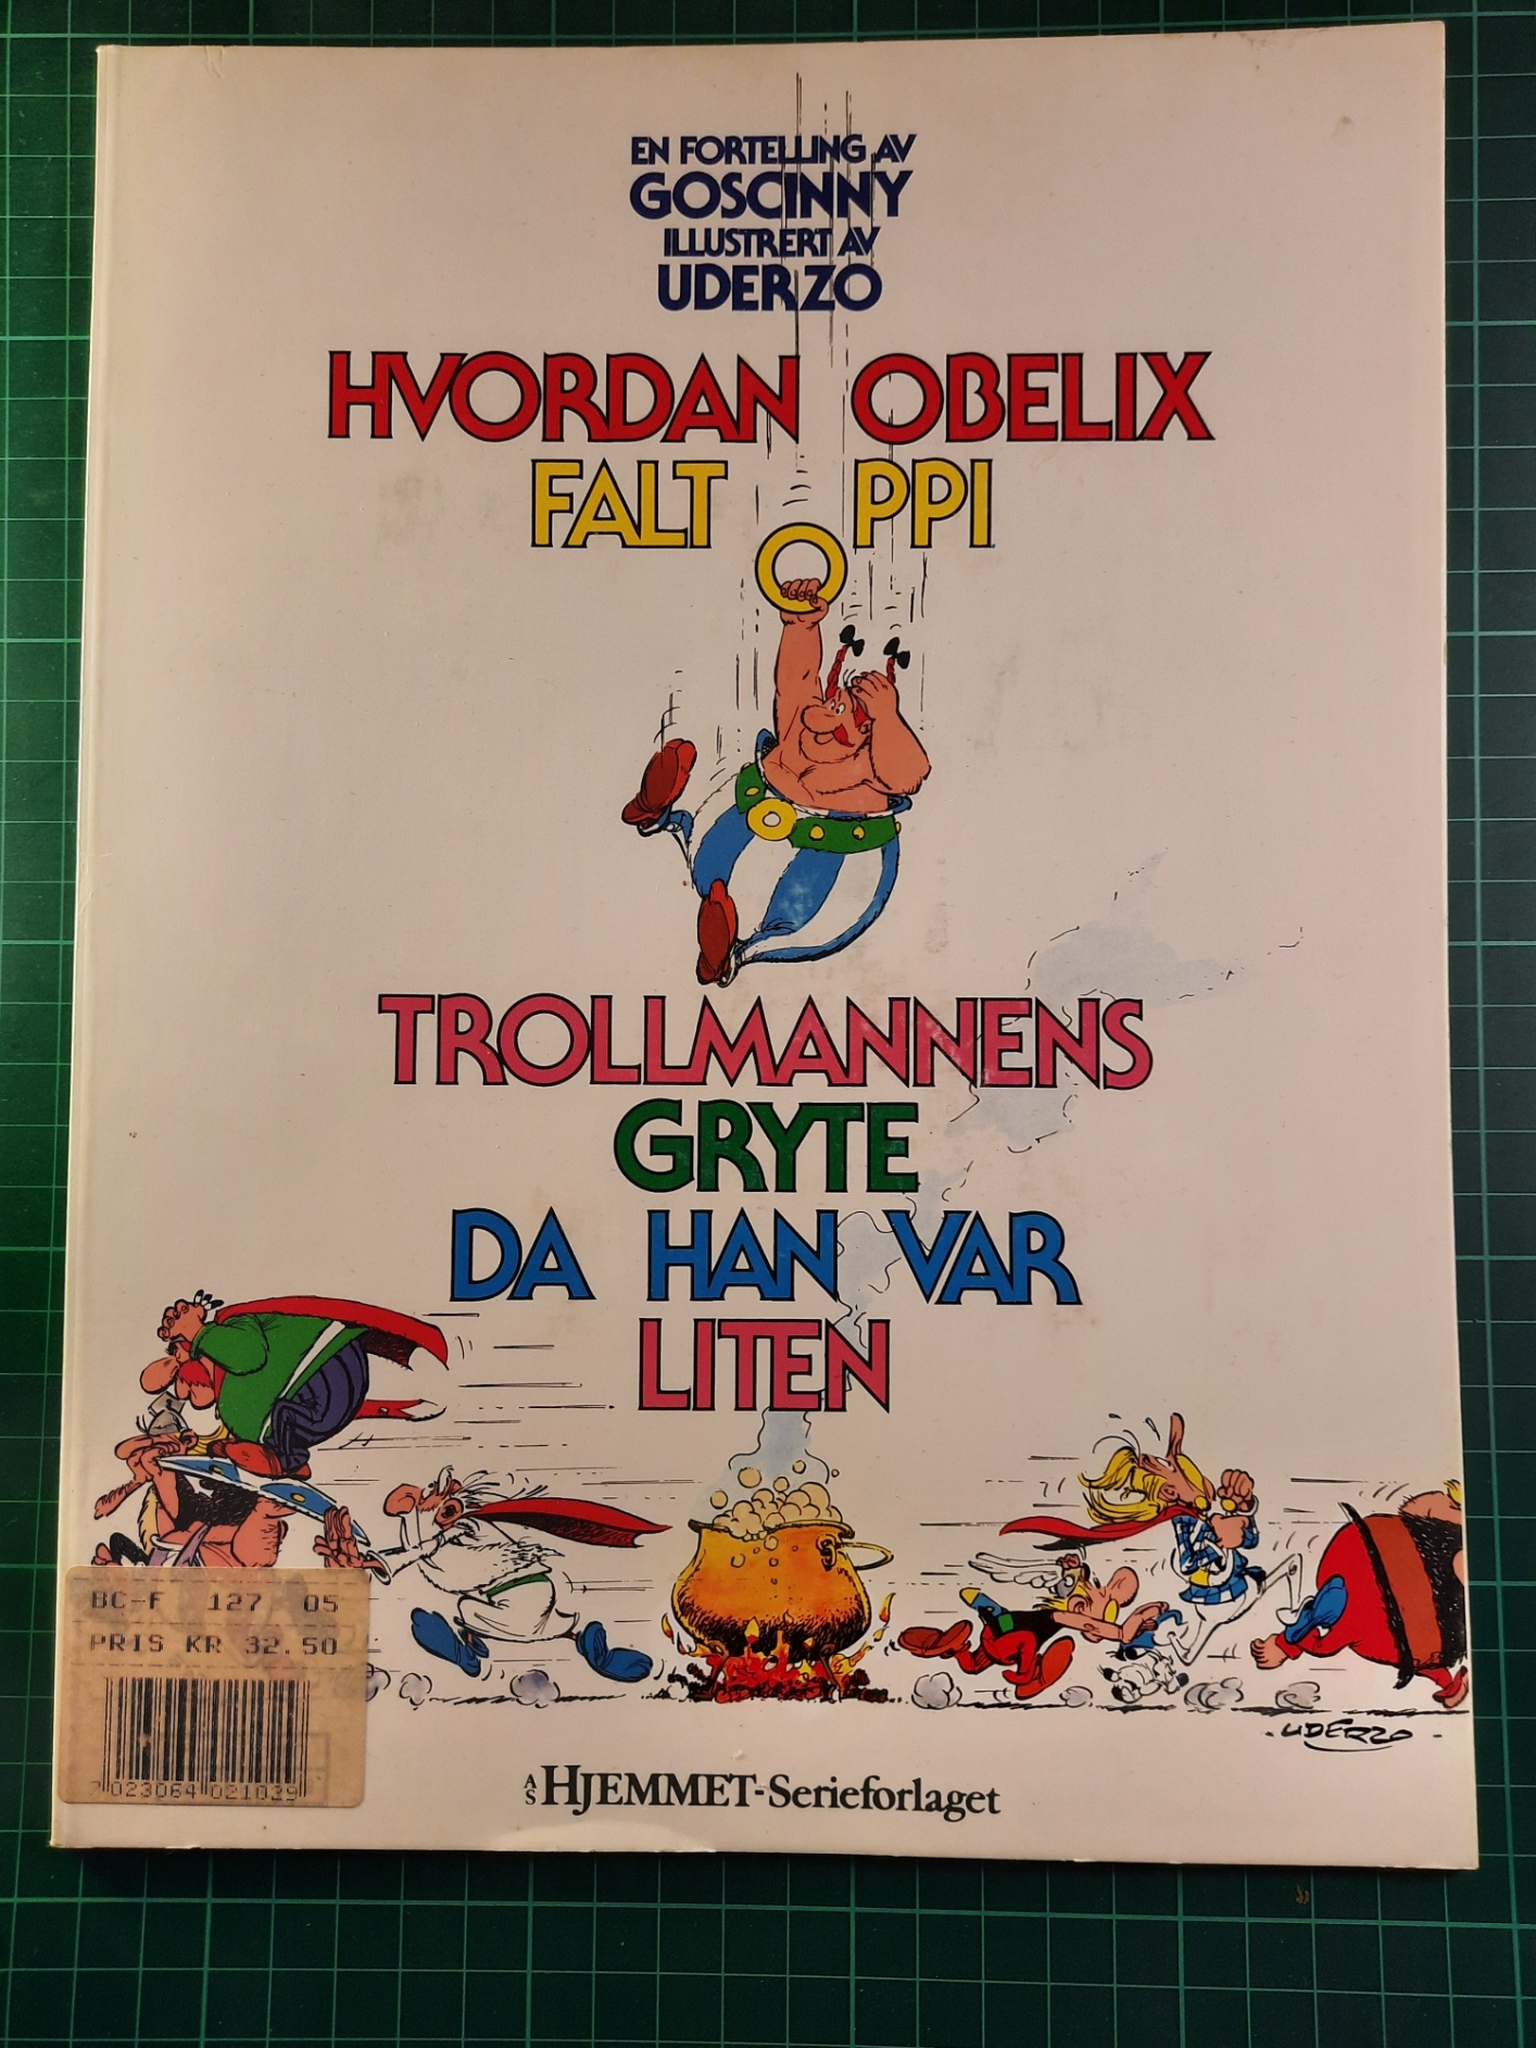 Hvordan Obelix falt oppi trollmannens gryte da han var liten